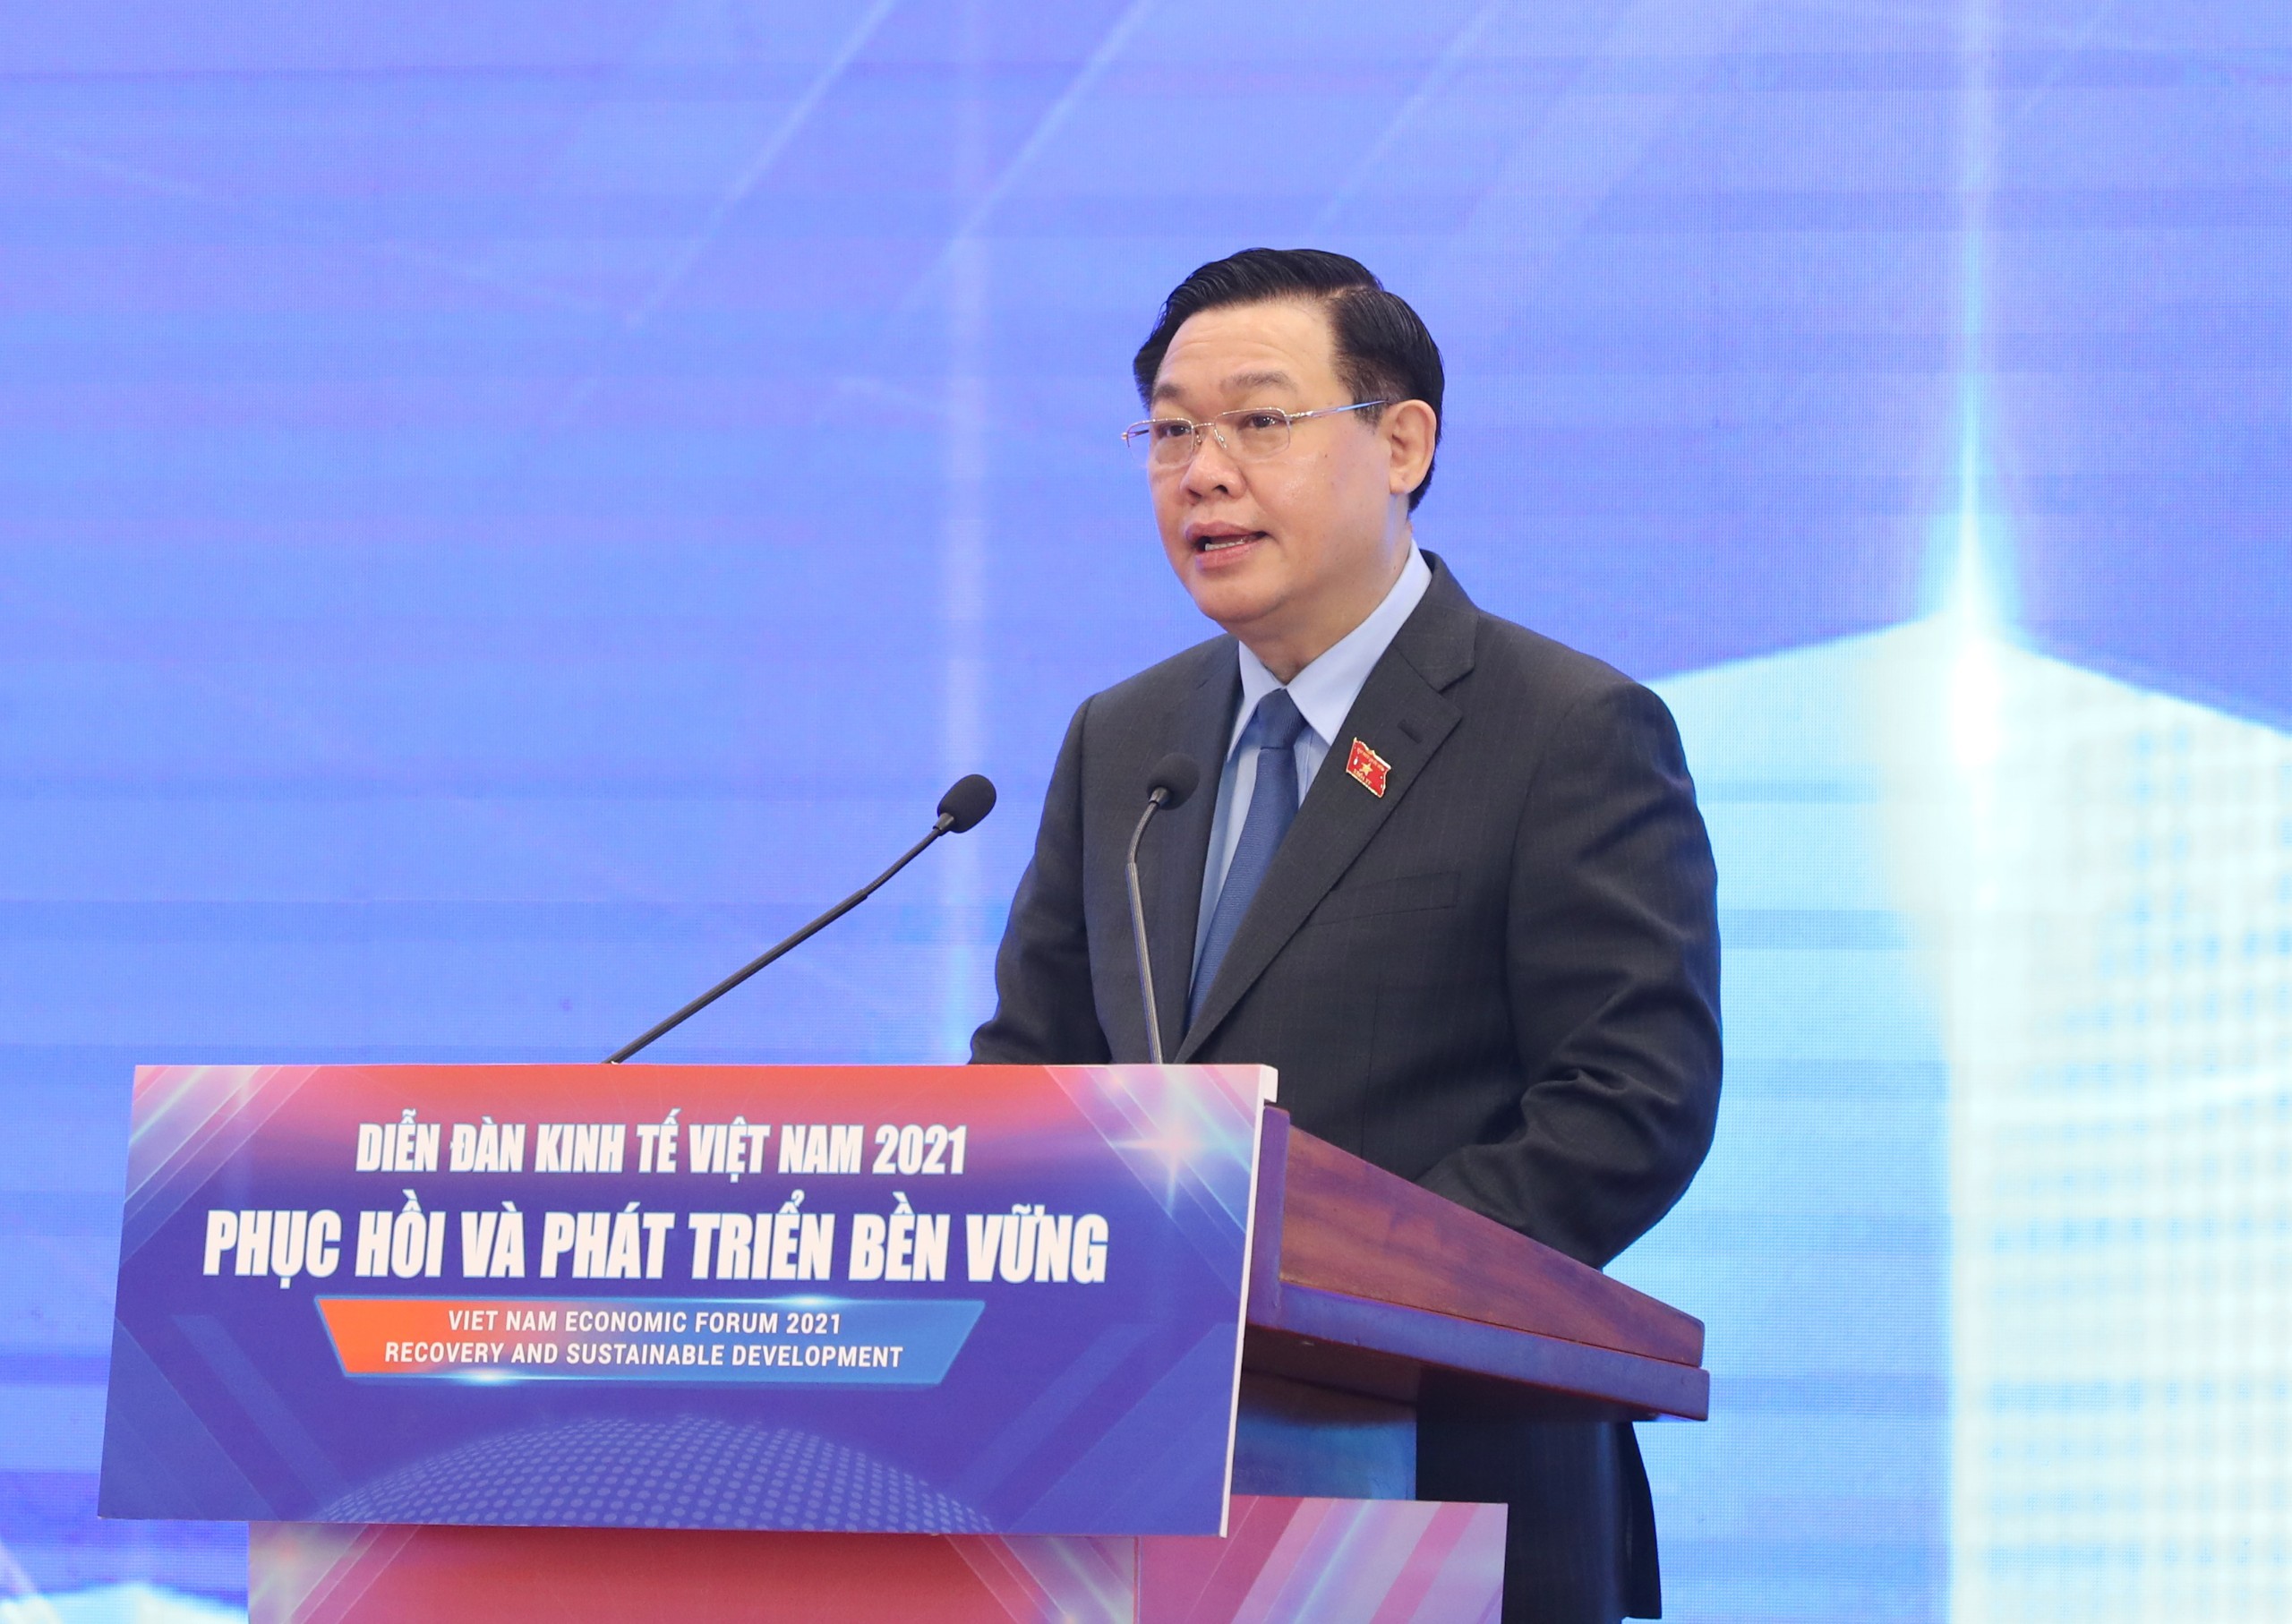 Chủ tịch Quốc hội Vương Đình Huệ phát biểu khai mạc Diễn đàn Kinh tế Việt Nam 2021 ngày 5/12. Ảnh: Đức Phúc.